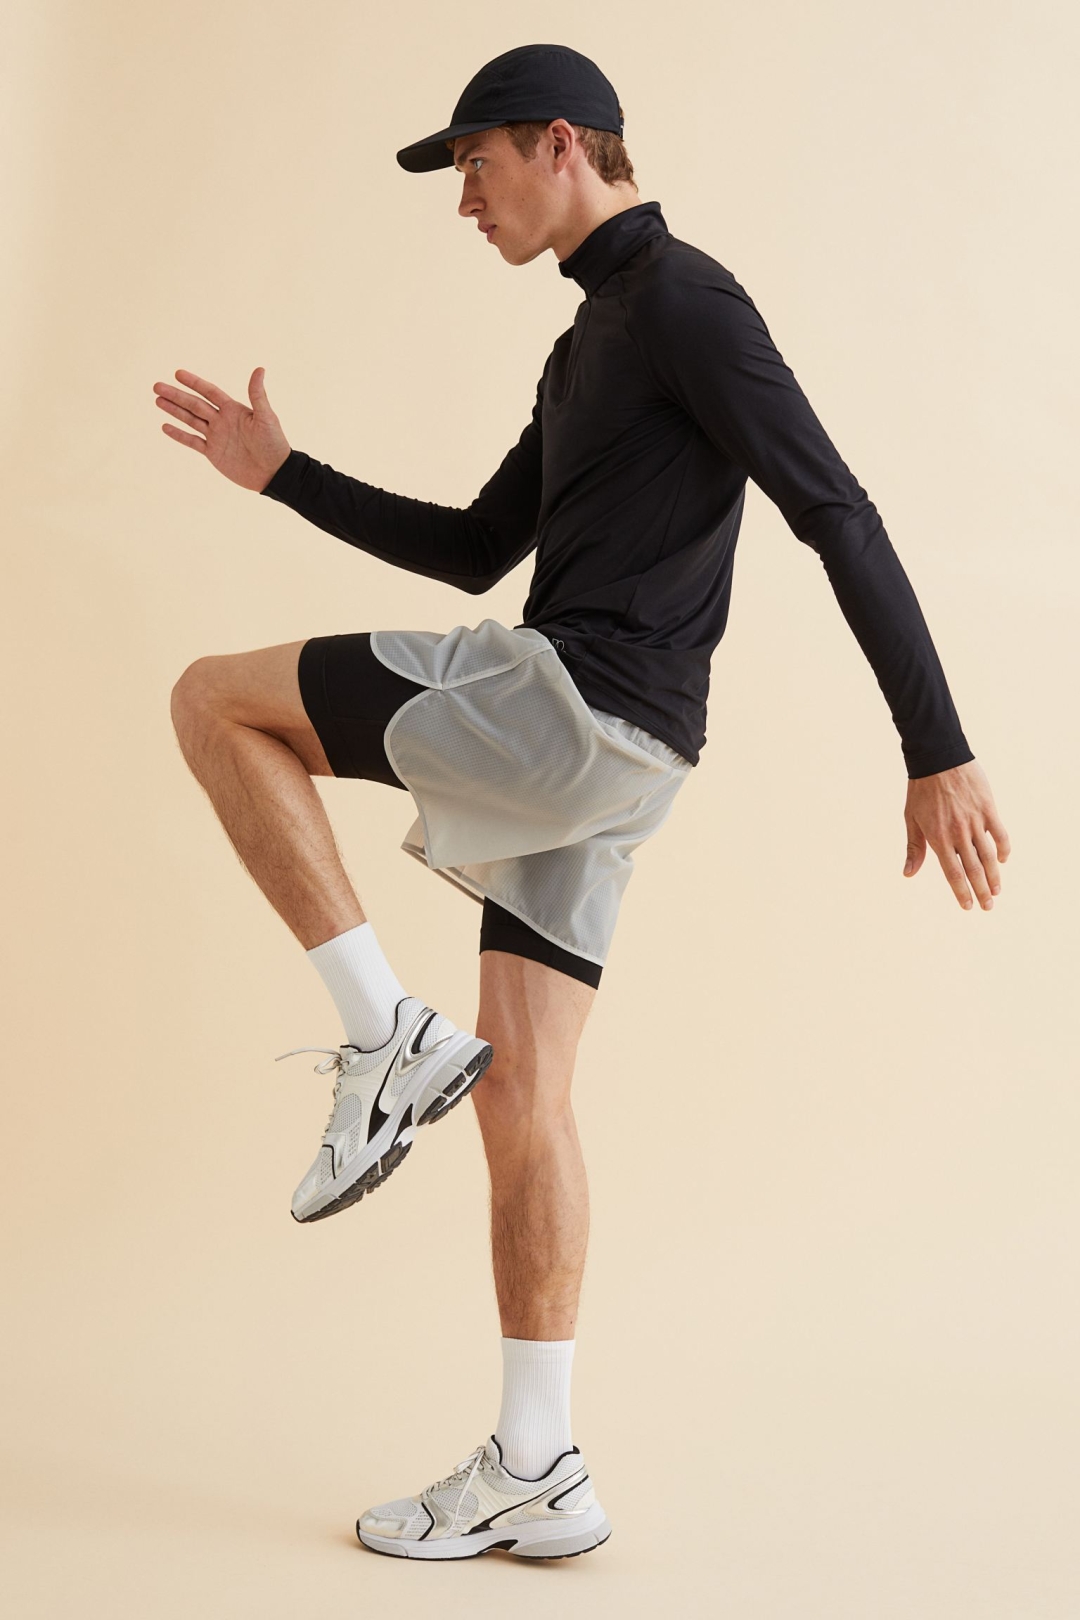 H&M je lansirao liniju sportske odjeće – izdvojili smo najbolje muške komade